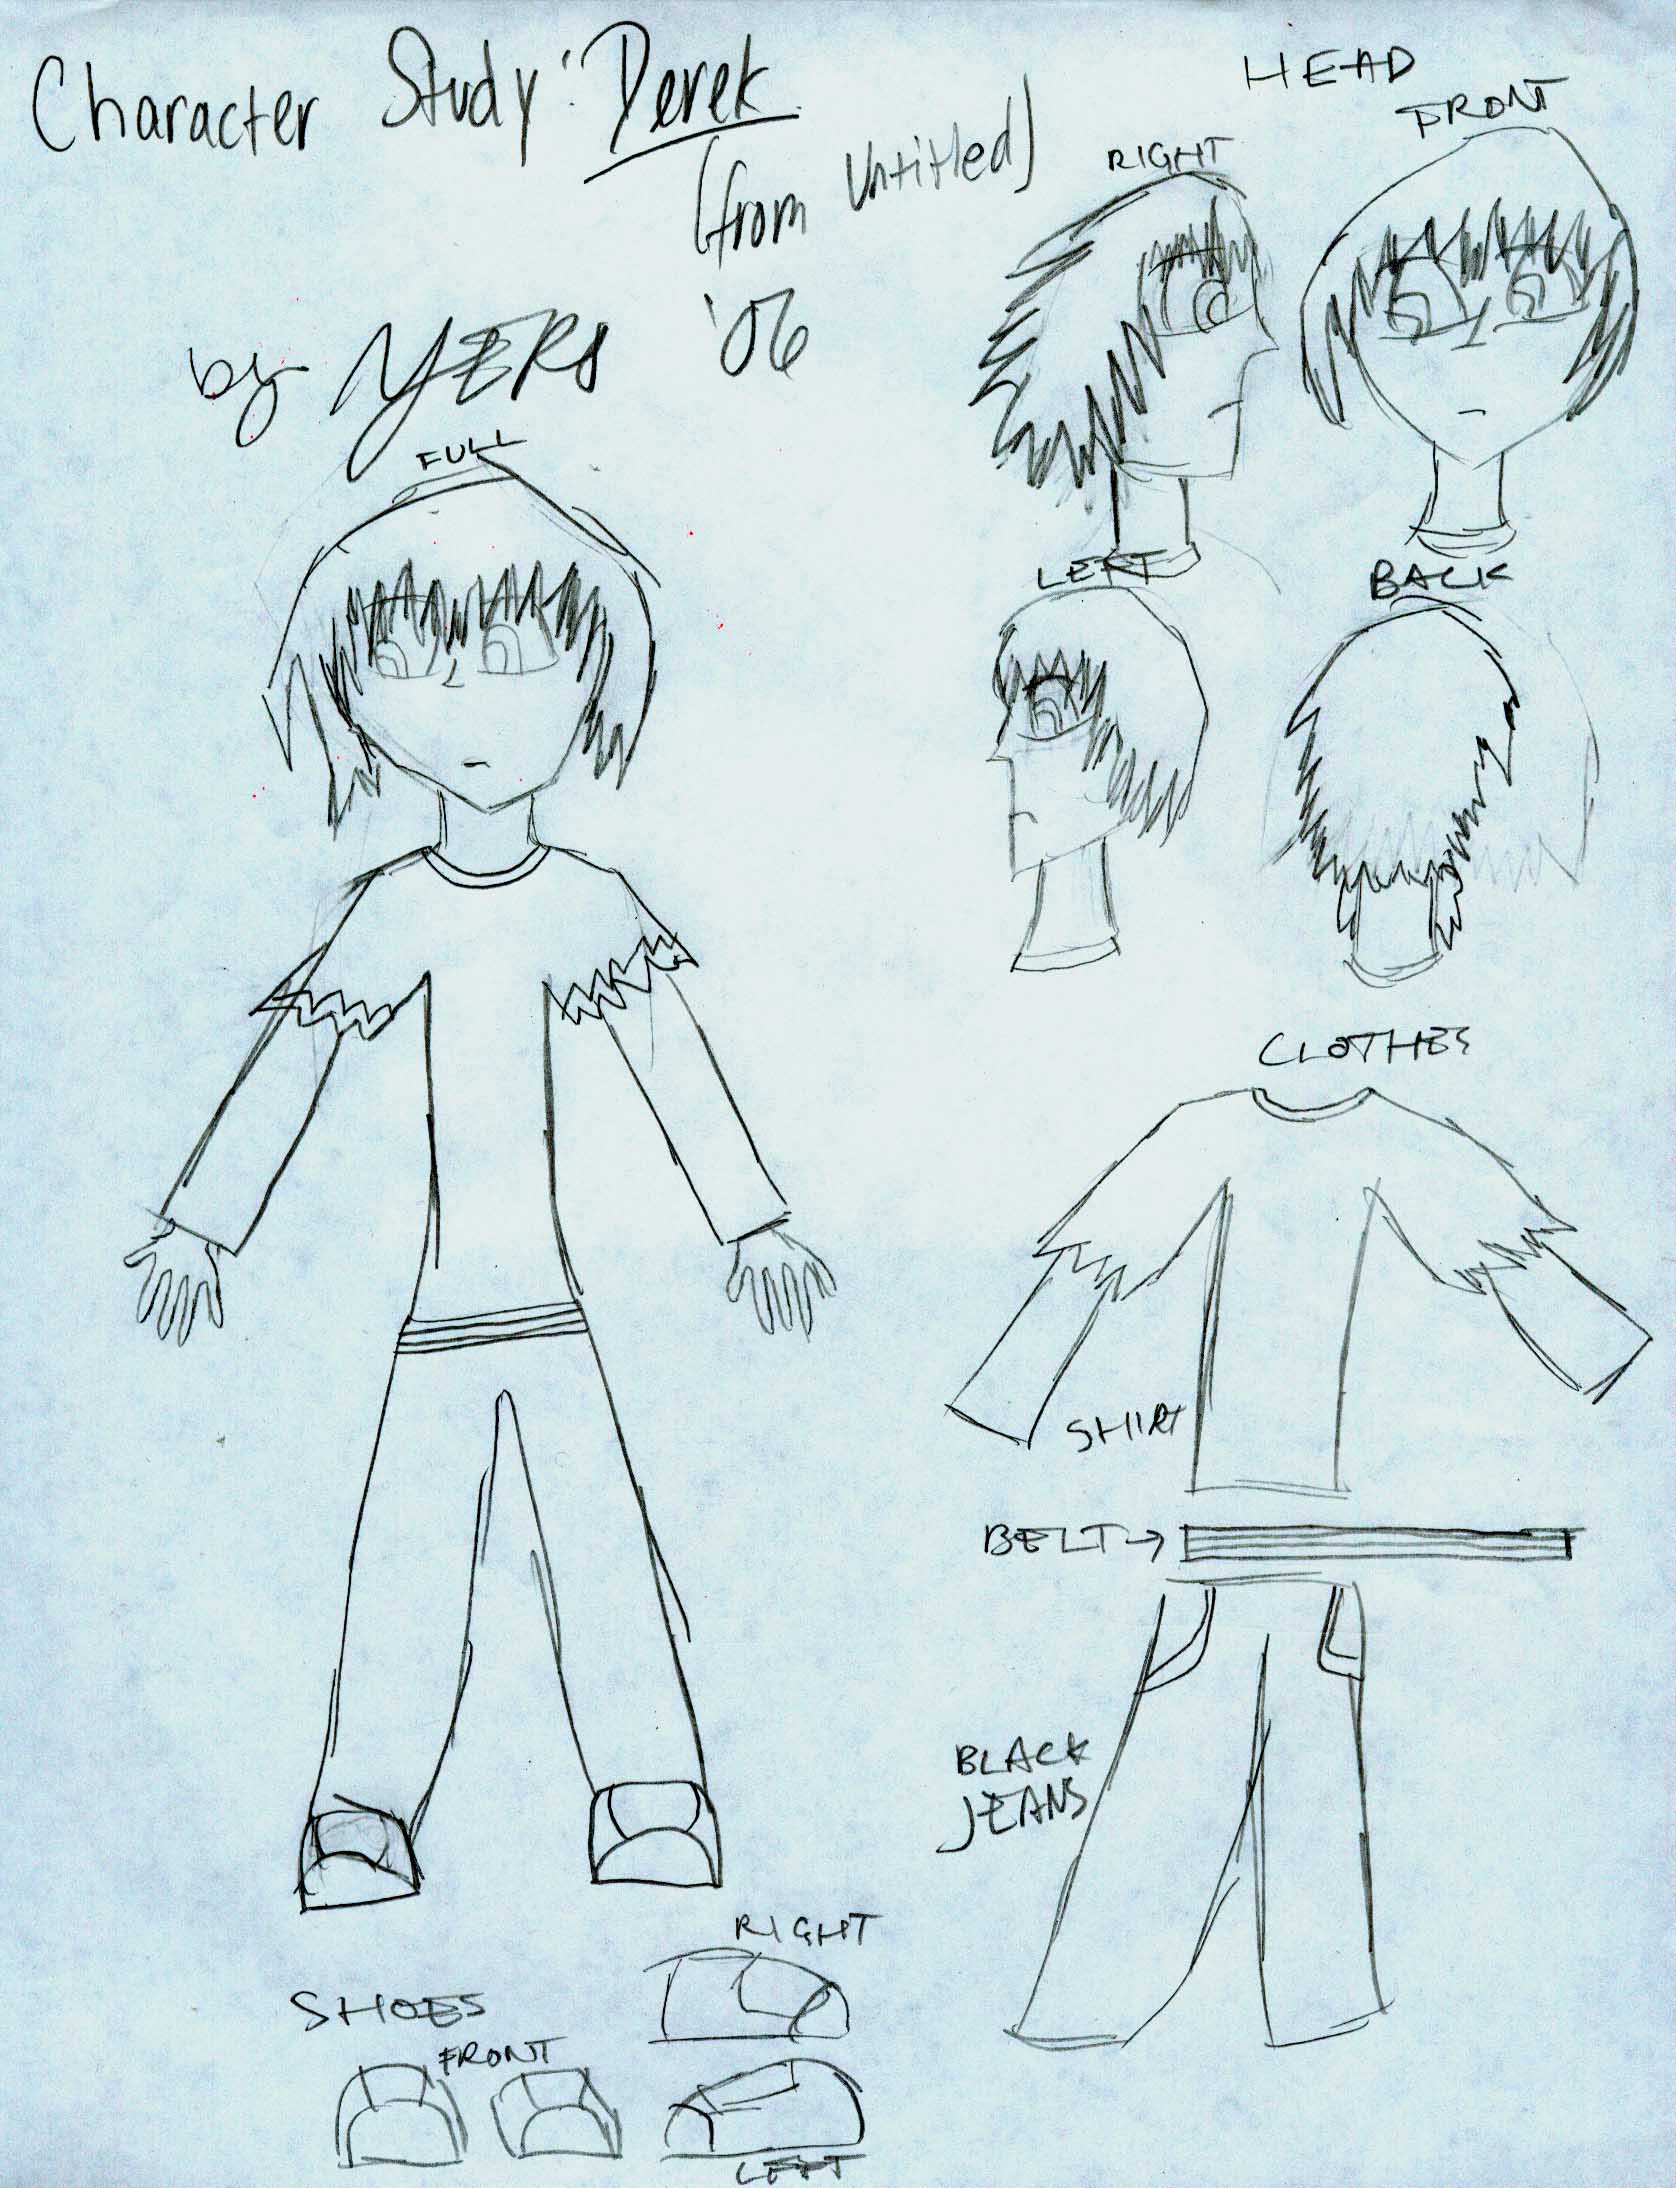 "Derek: Character Study"  sketch by wickedobsessed